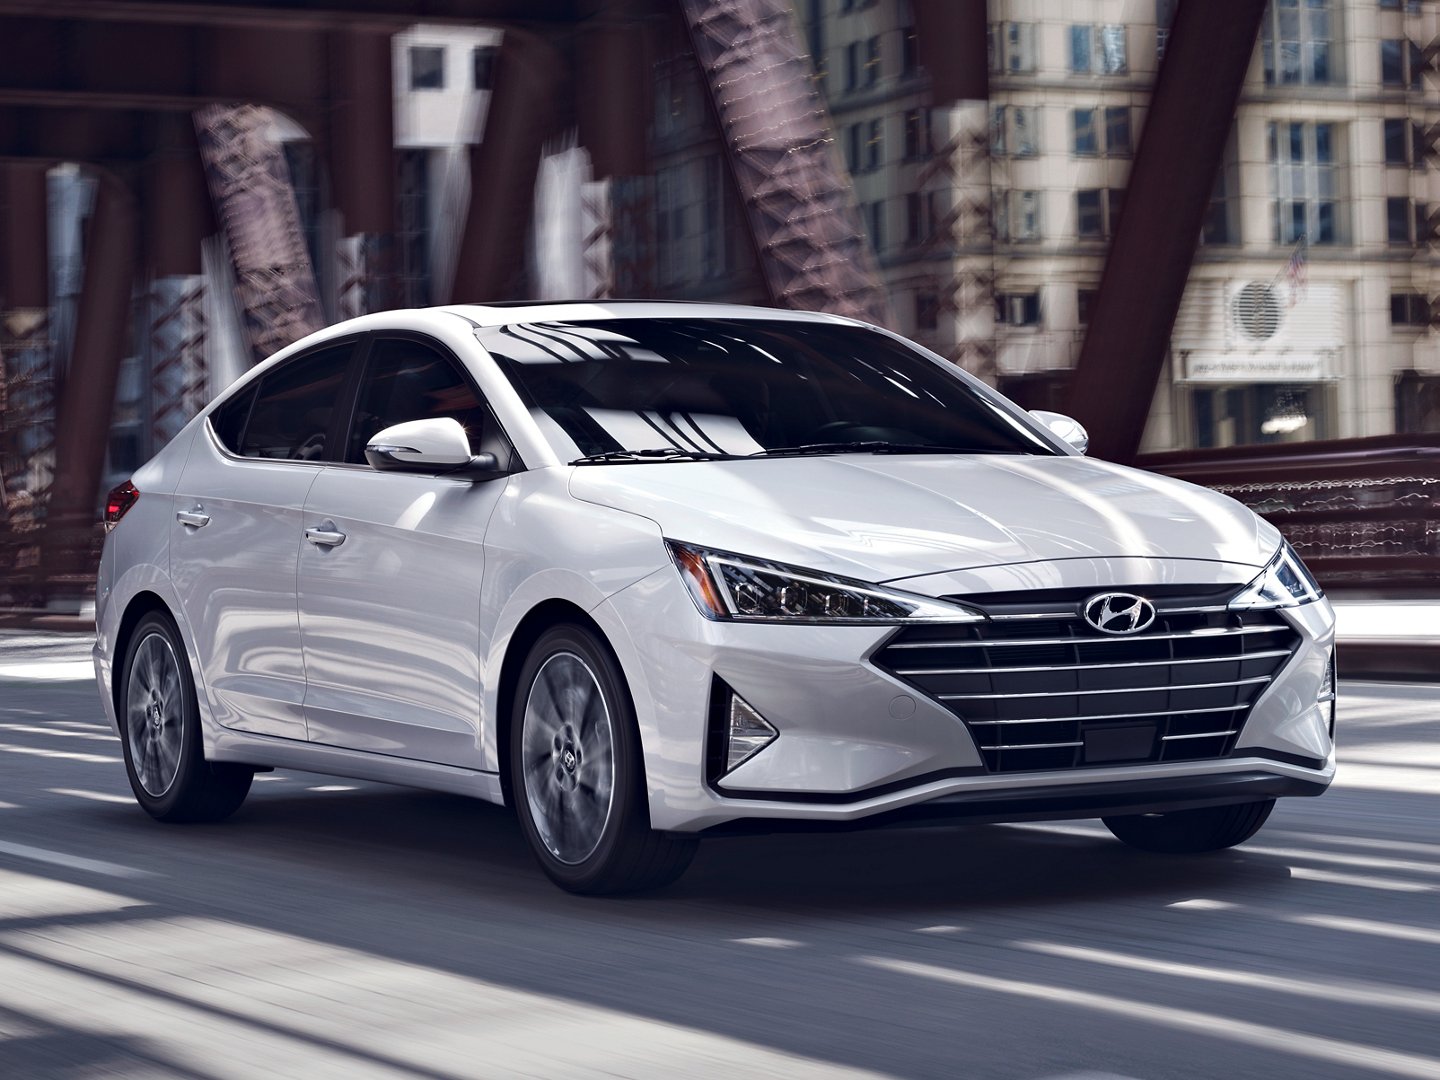 Đánh giá xe Hyundai Elantra 2020 Giá bán khuyến mãi thông số kỹ thuật   anycarvn